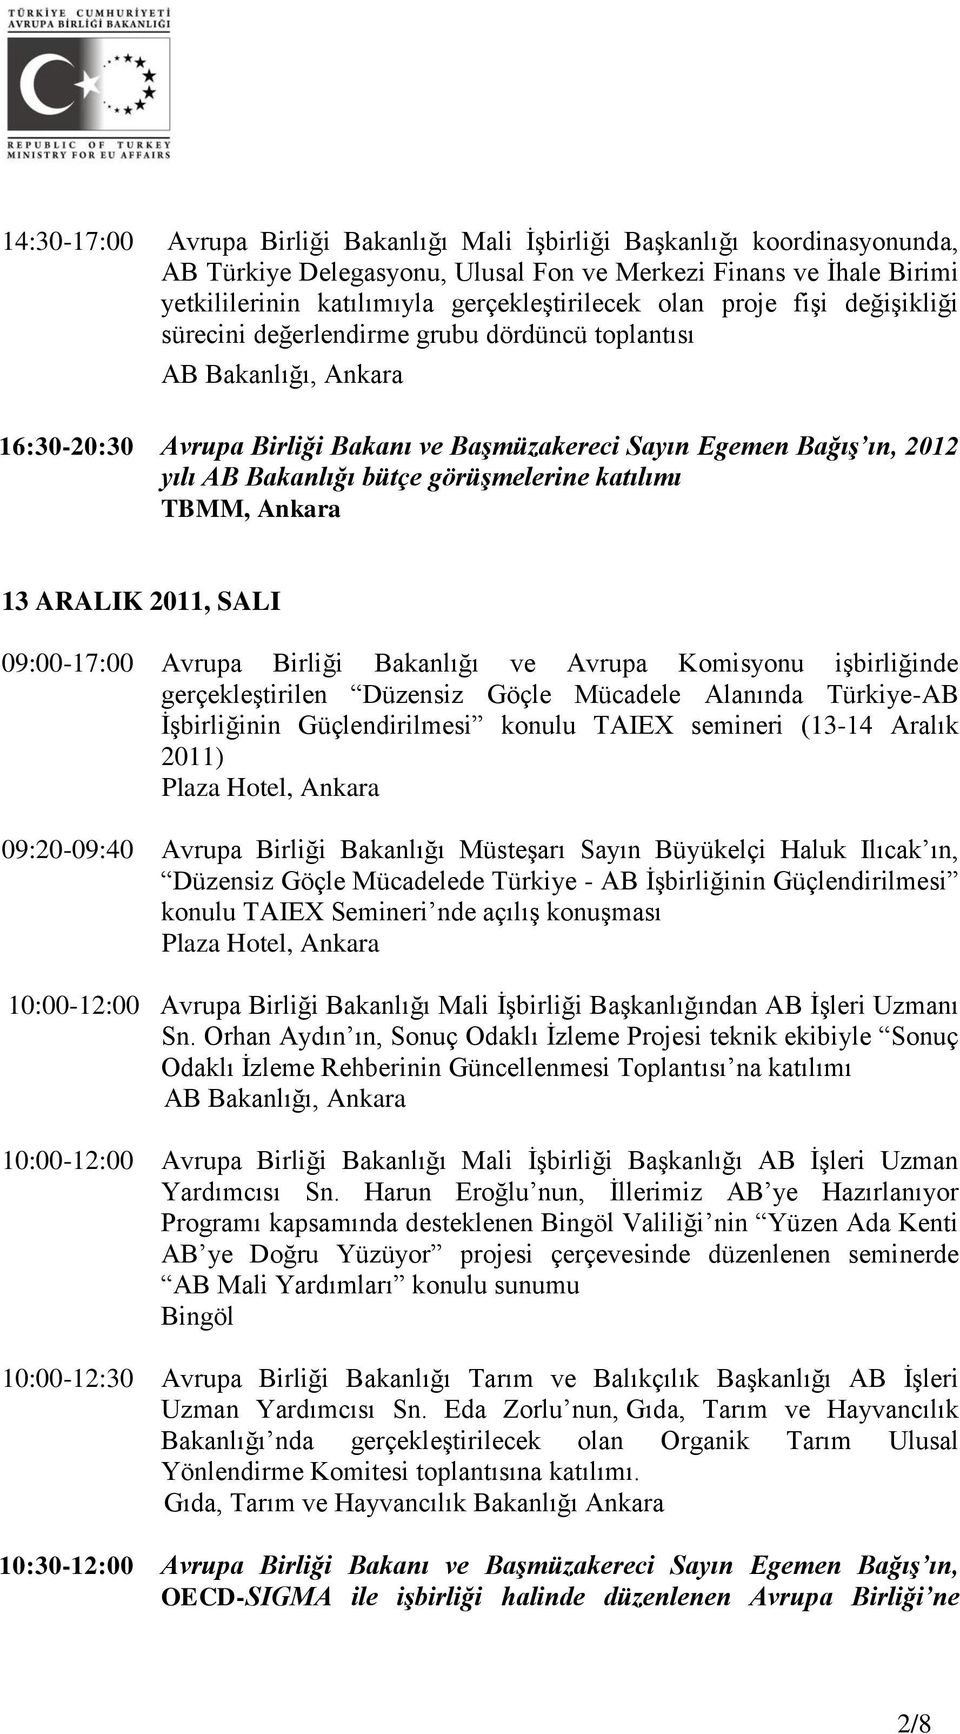 katılımı TBMM, Ankara 13 ARALIK 2011, SALI 09:00-17:00 Avrupa Birliği Bakanlığı ve Avrupa Komisyonu işbirliğinde gerçekleştirilen Düzensiz Göçle Mücadele Alanında Türkiye-AB İşbirliğinin